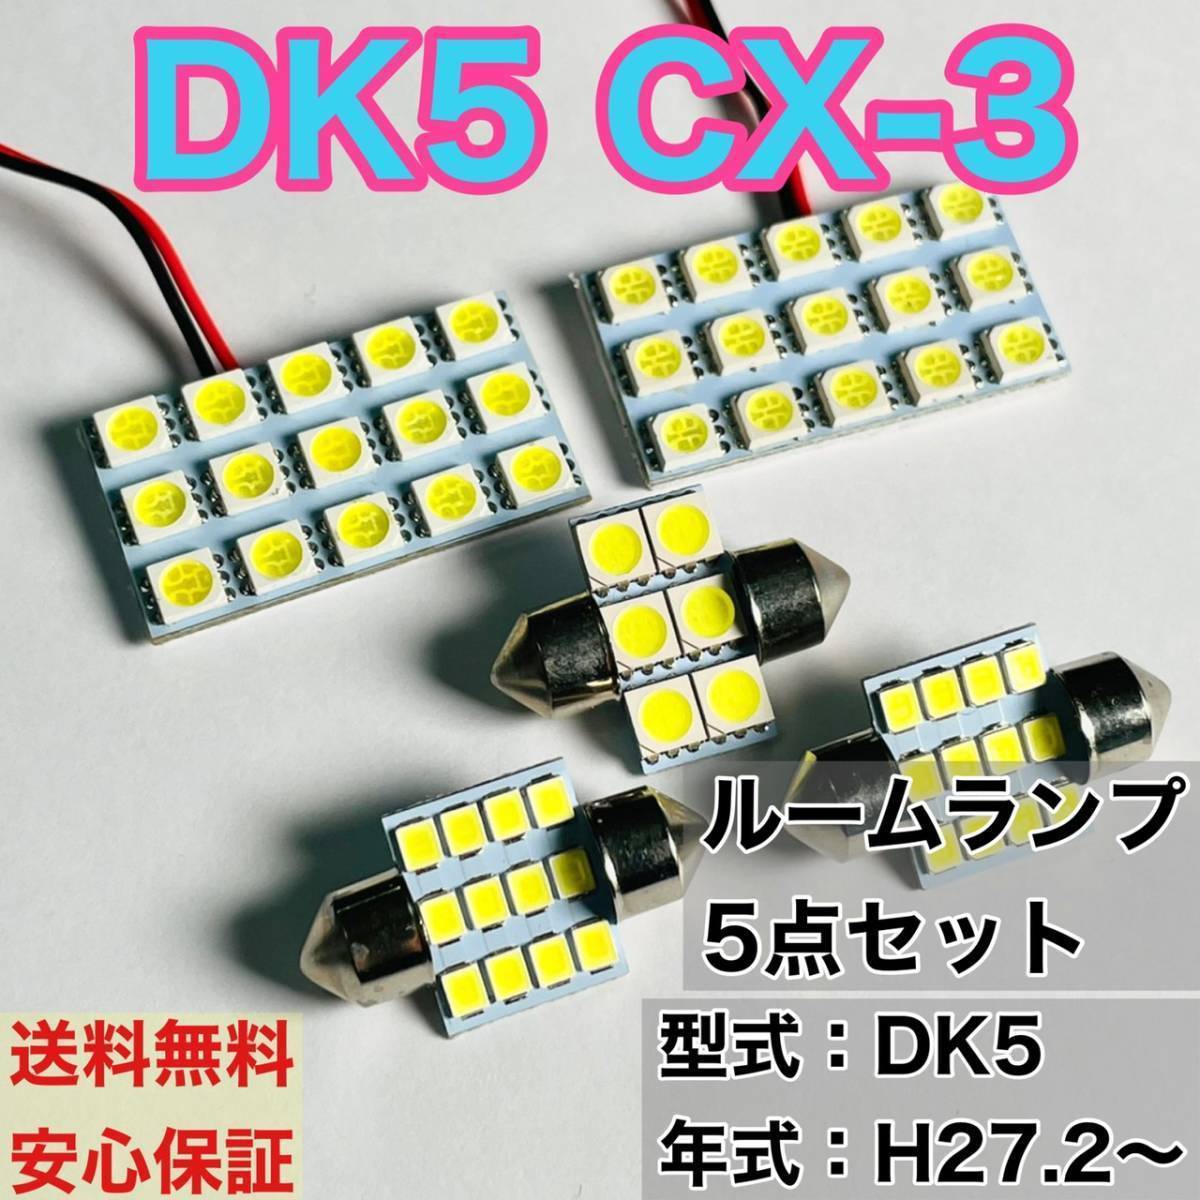 DK5 CX-3 T10 LED ルームランプセット 室内灯 車内灯 読書灯 ウェッジ球 ホワイト 5個セット マツダ